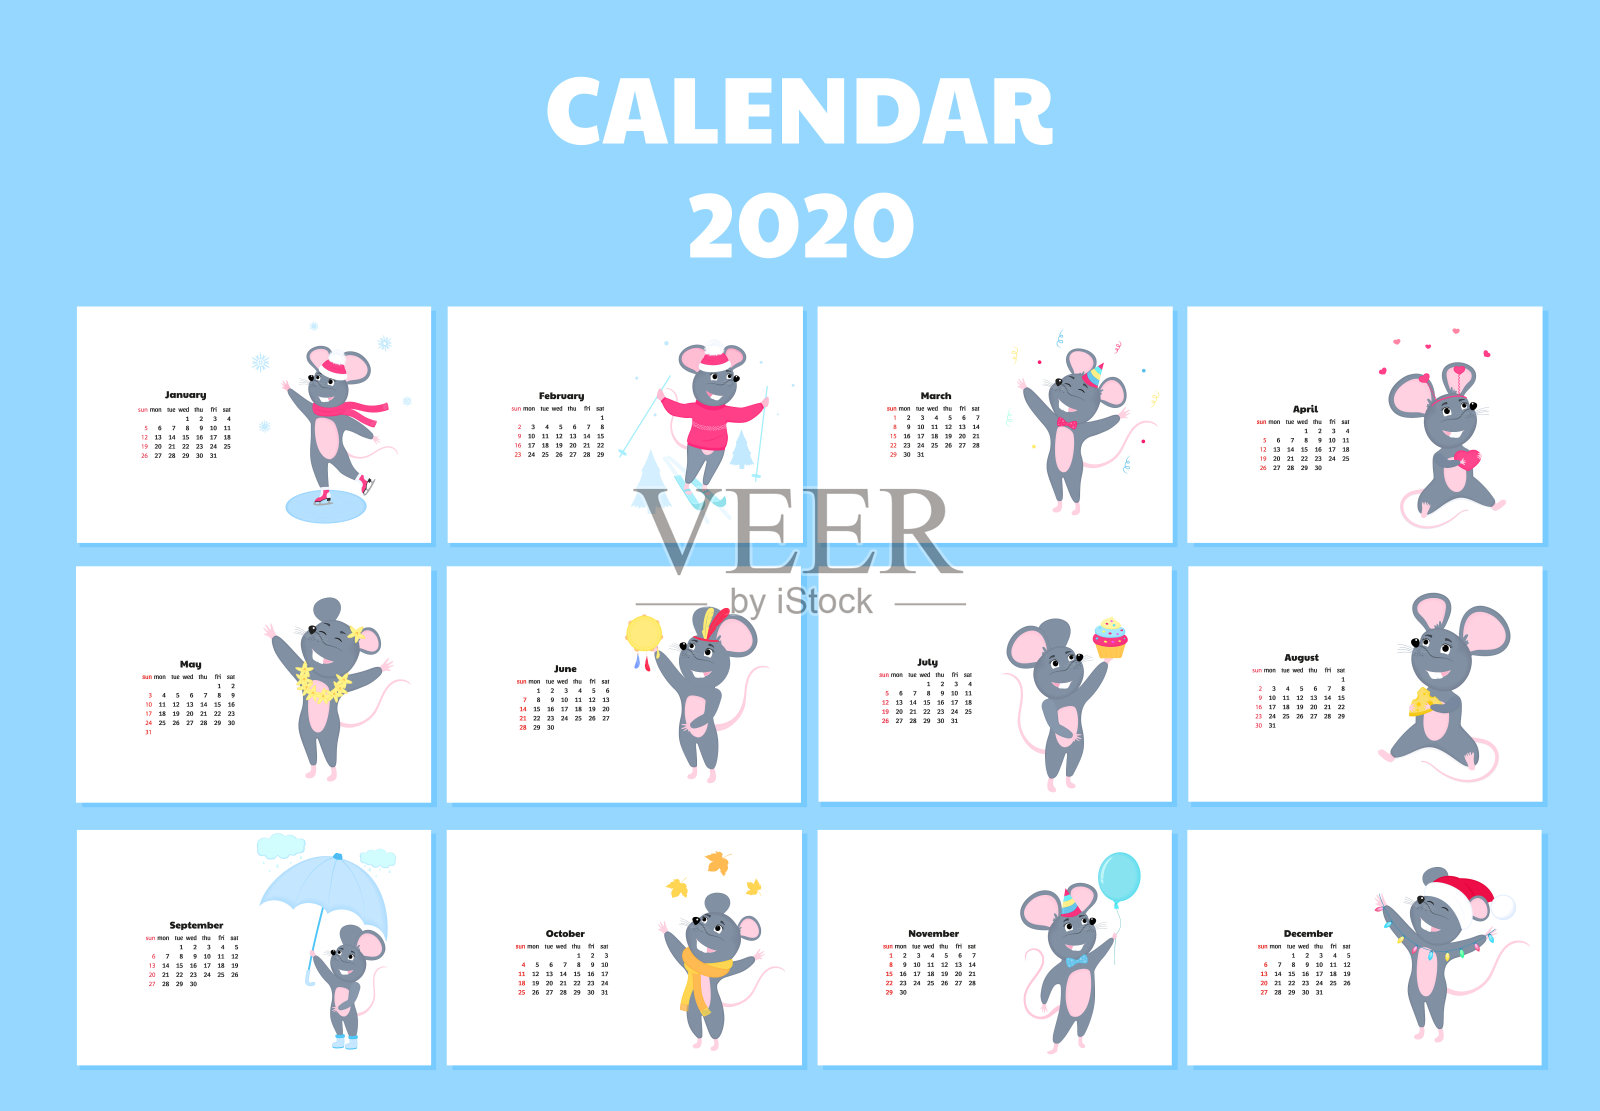 2020年的日历从周日到周六。穿着不同服装的可爱老鼠。中国新年的象征。鼠标卡通人物。有趣的动物。设计模板素材